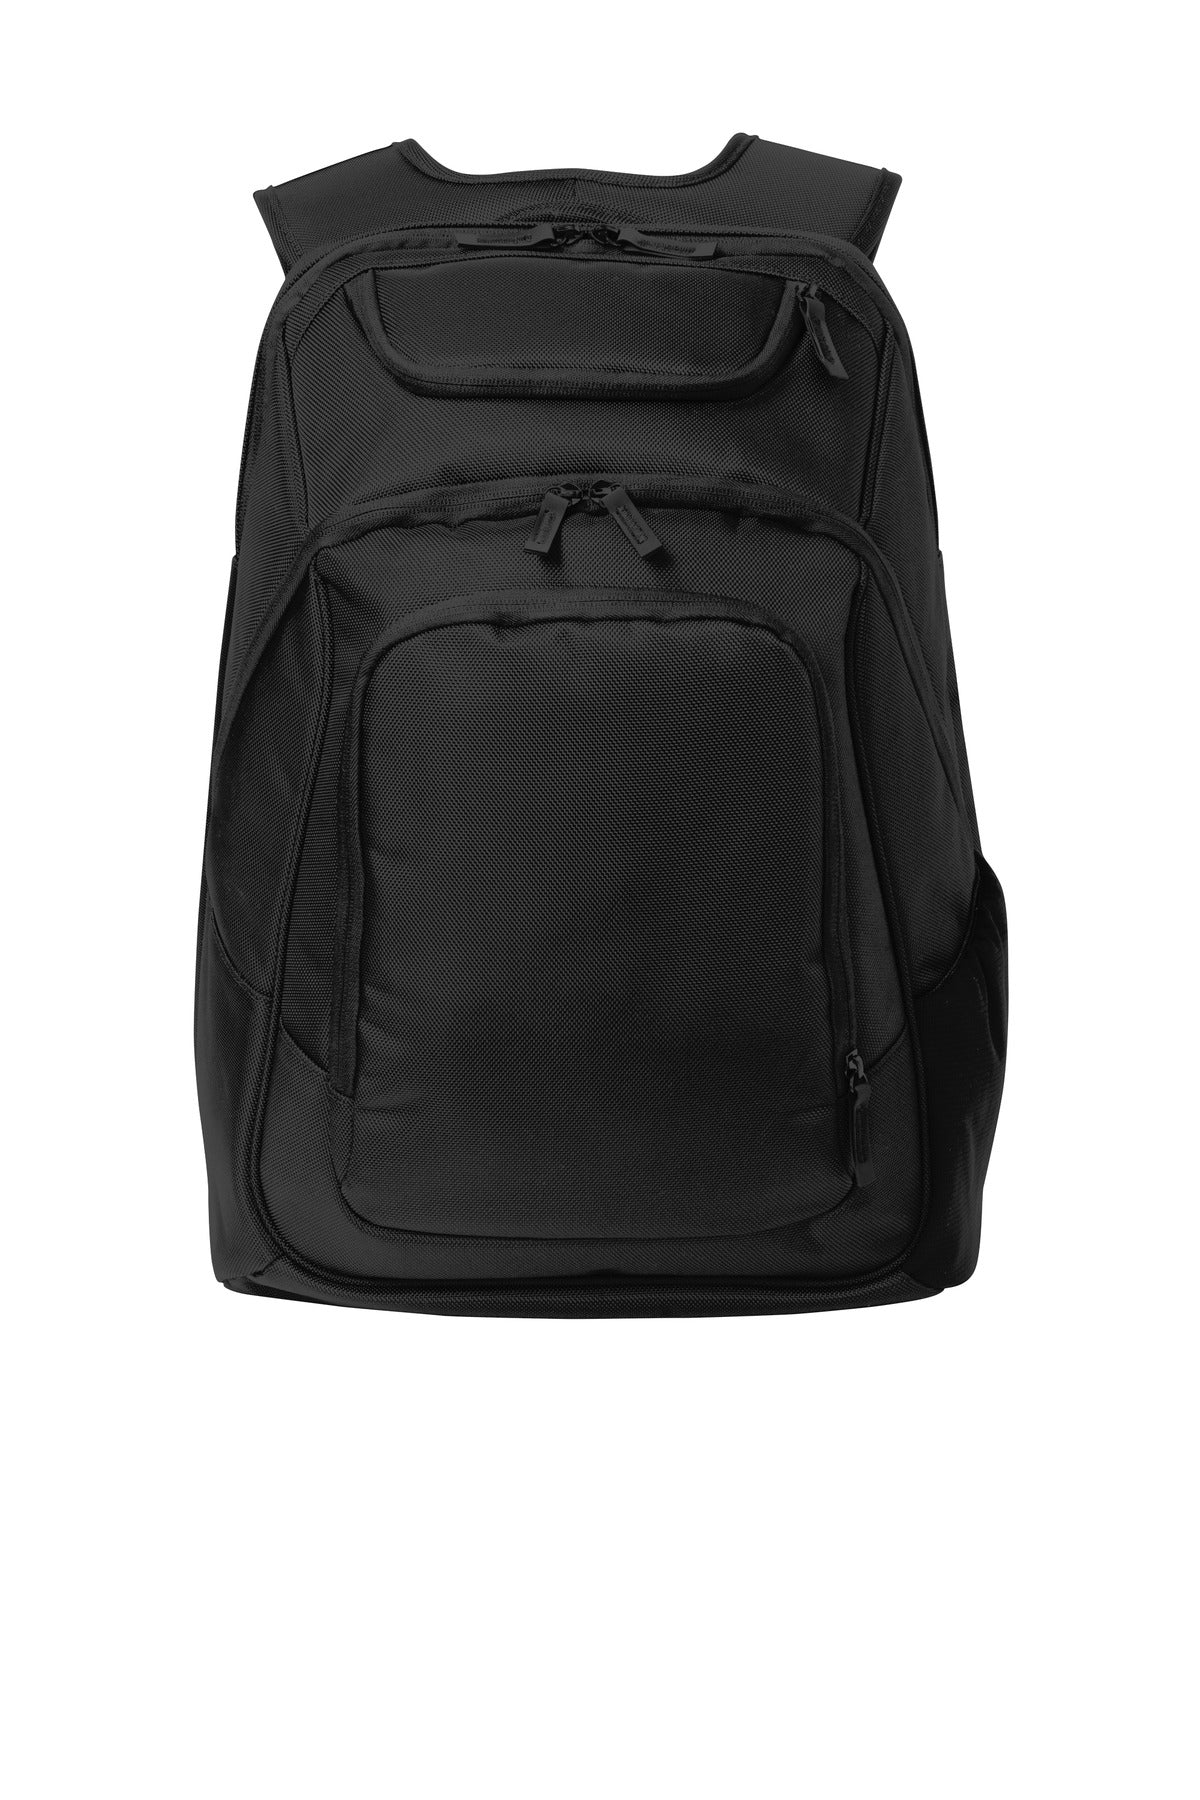 Port Authority ® Exec Backpack. BG223 - DFW Impression